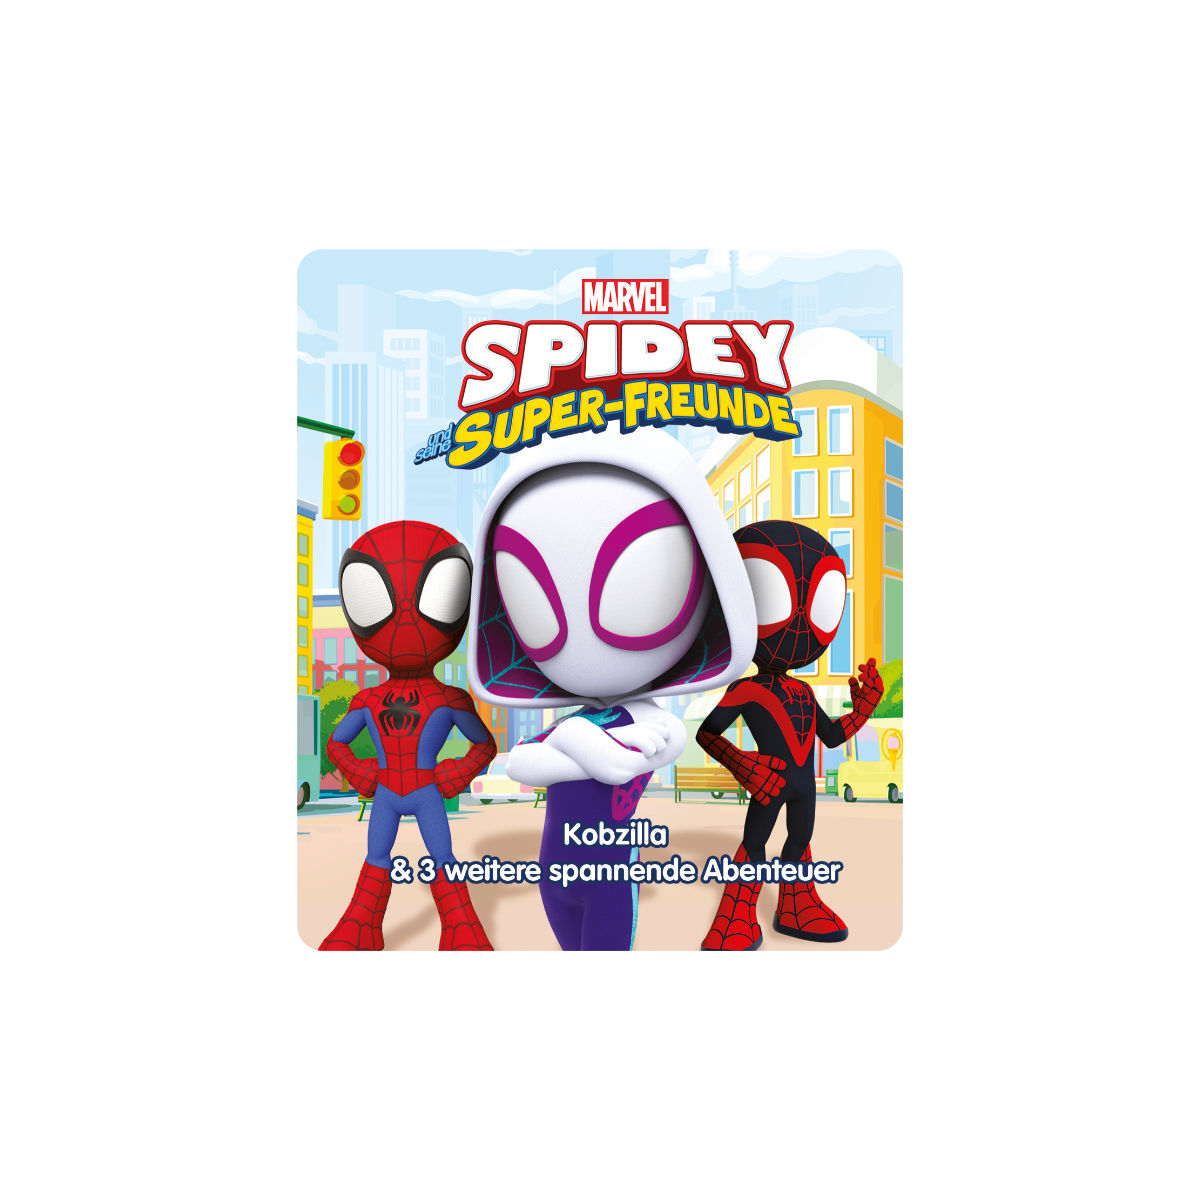 Tonies | Marvel Spidey und seine Super-Freunde - Kobzilla | Folge 3